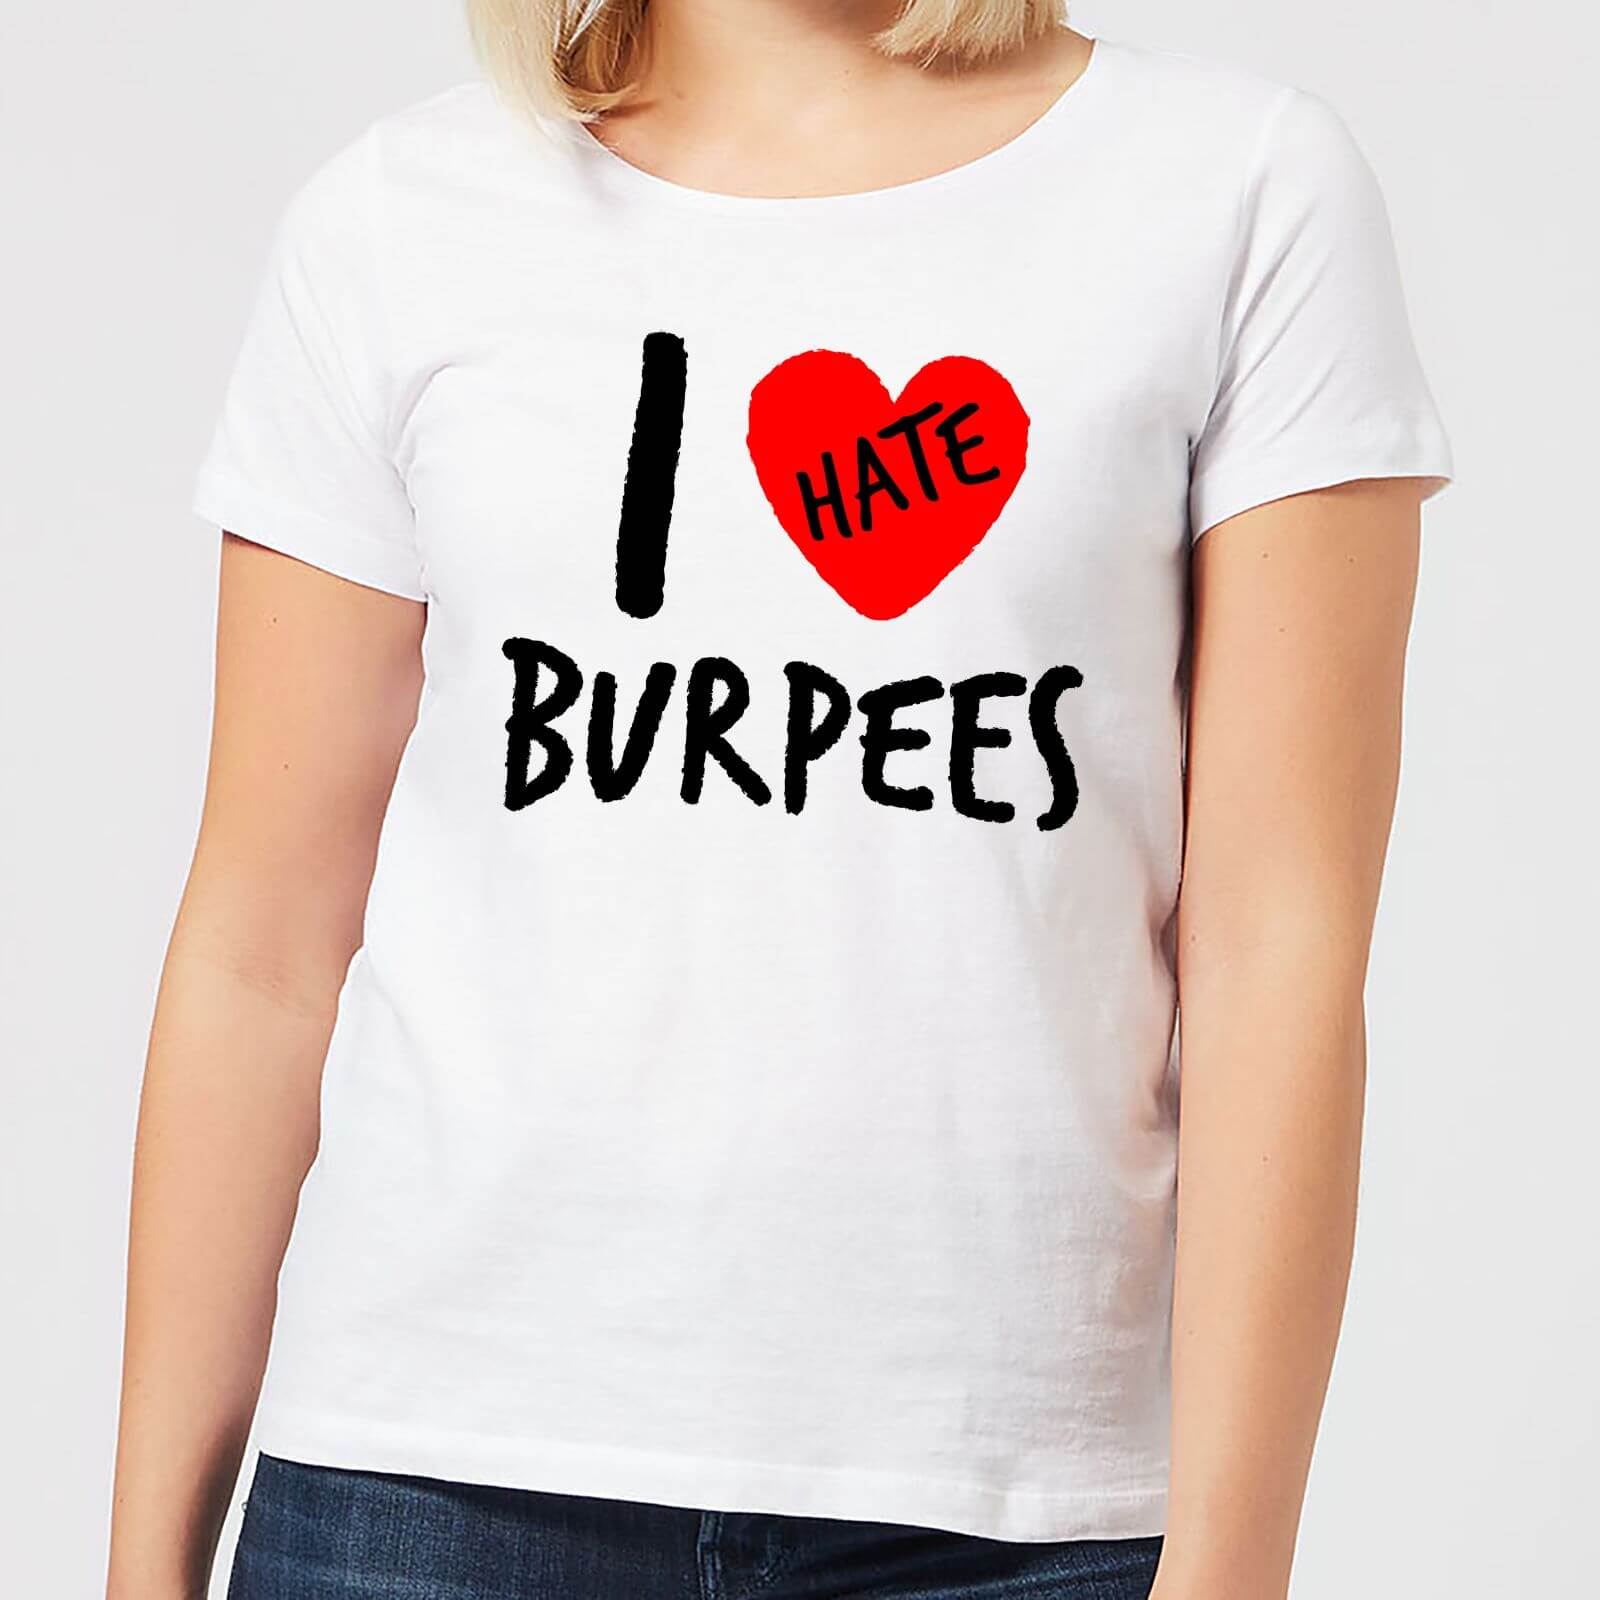 I Hate Burpees Women's T-Shirt - White - XXL - White